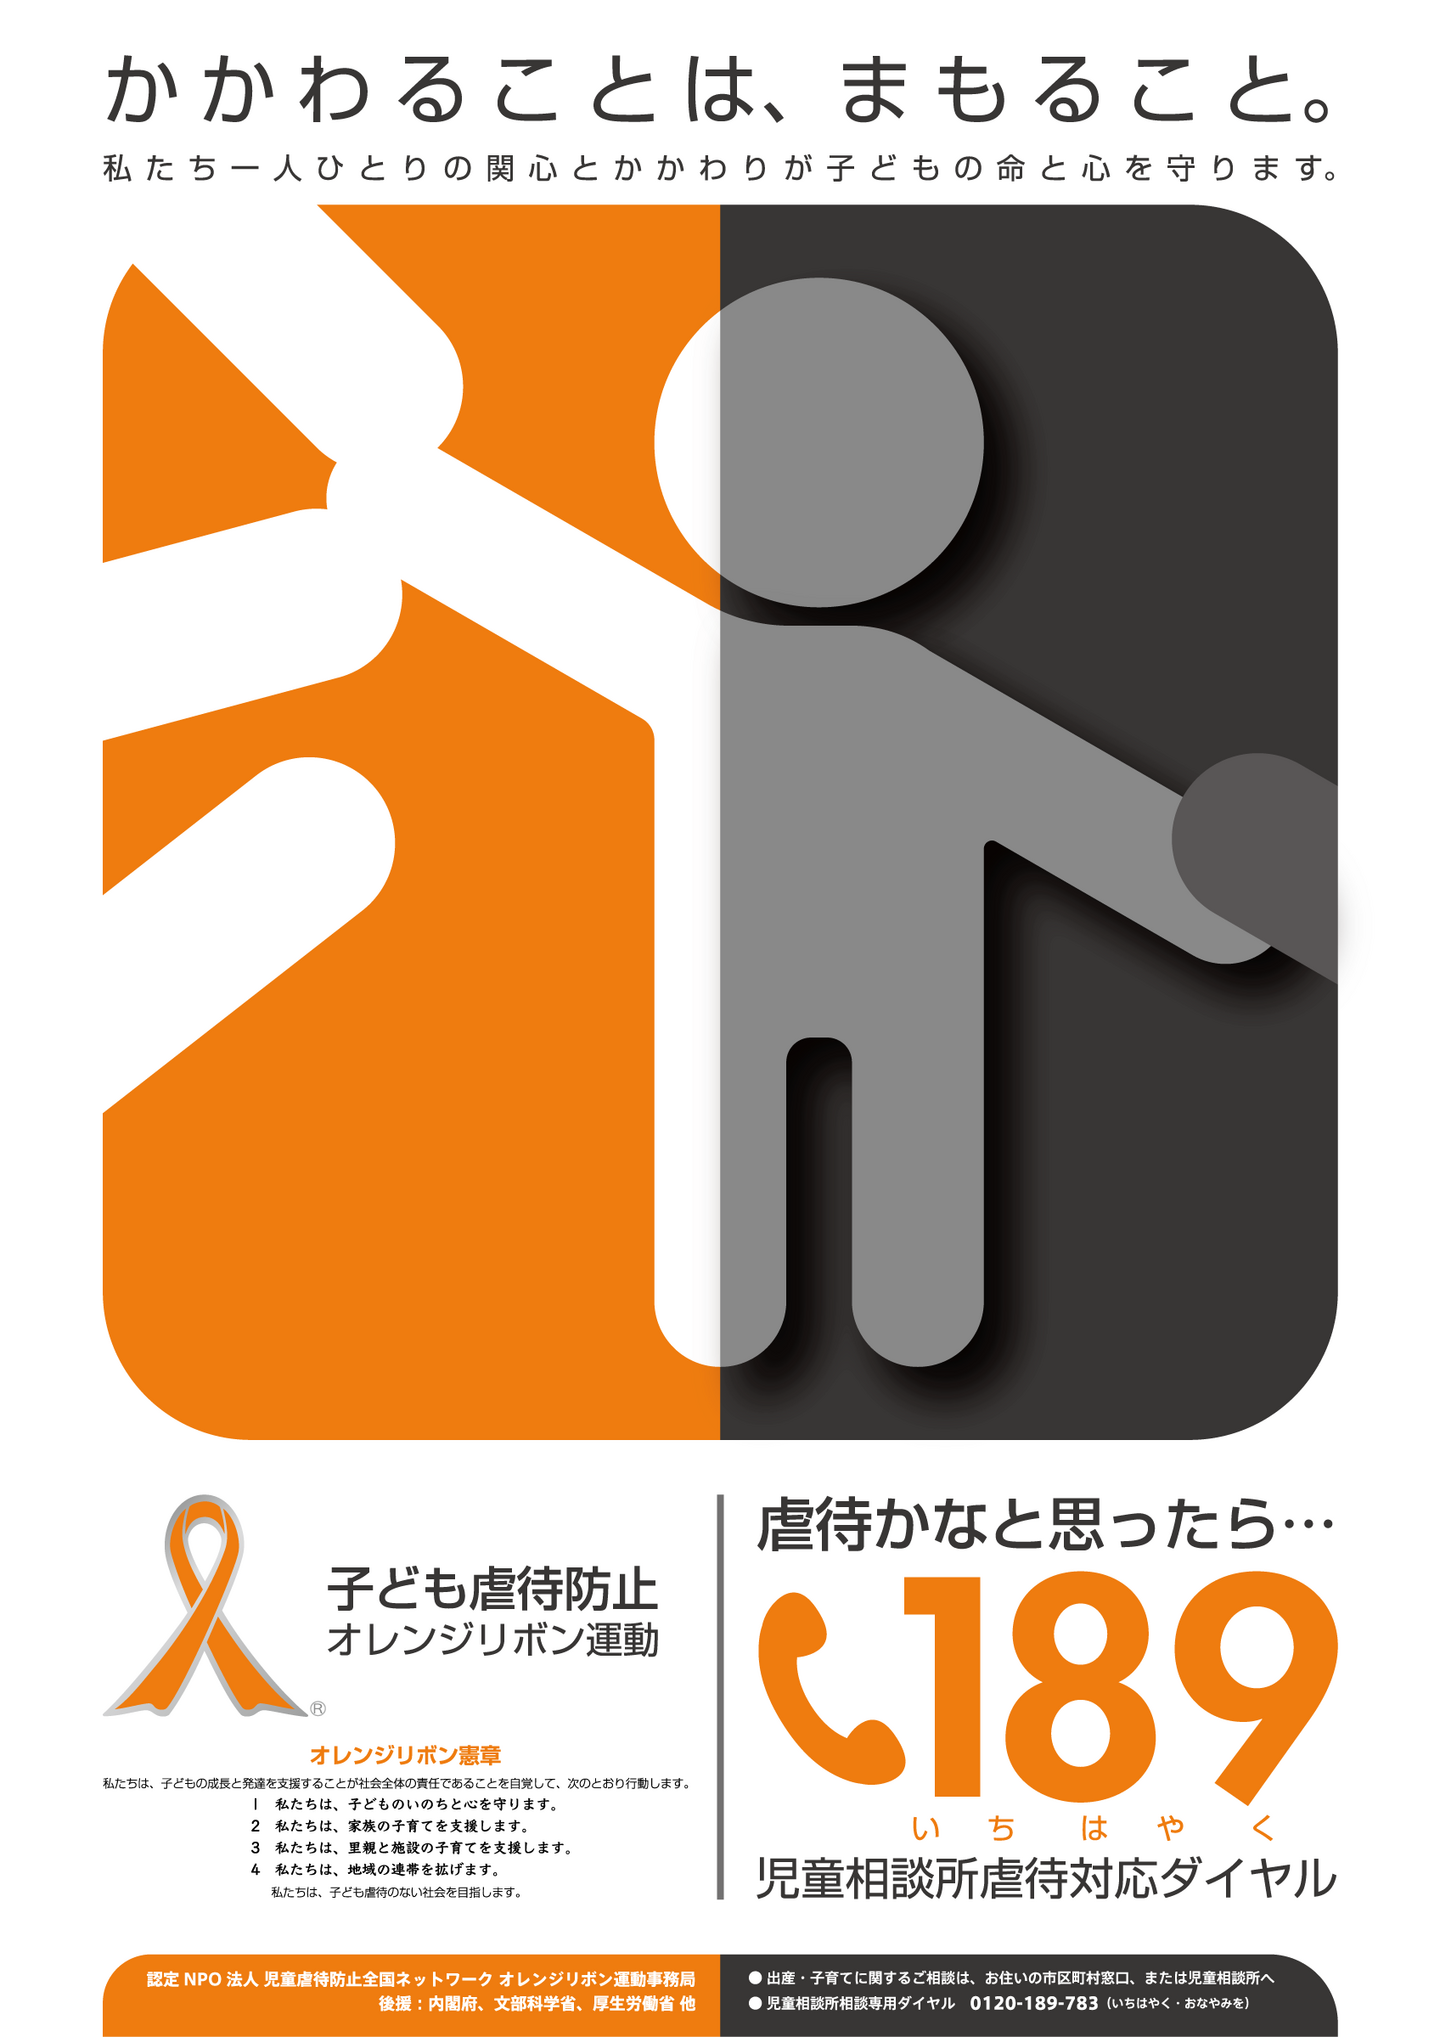 児童虐待防止全国ネットワーク 2022年度オレンジリボン公式ポスターデザインコンテスト